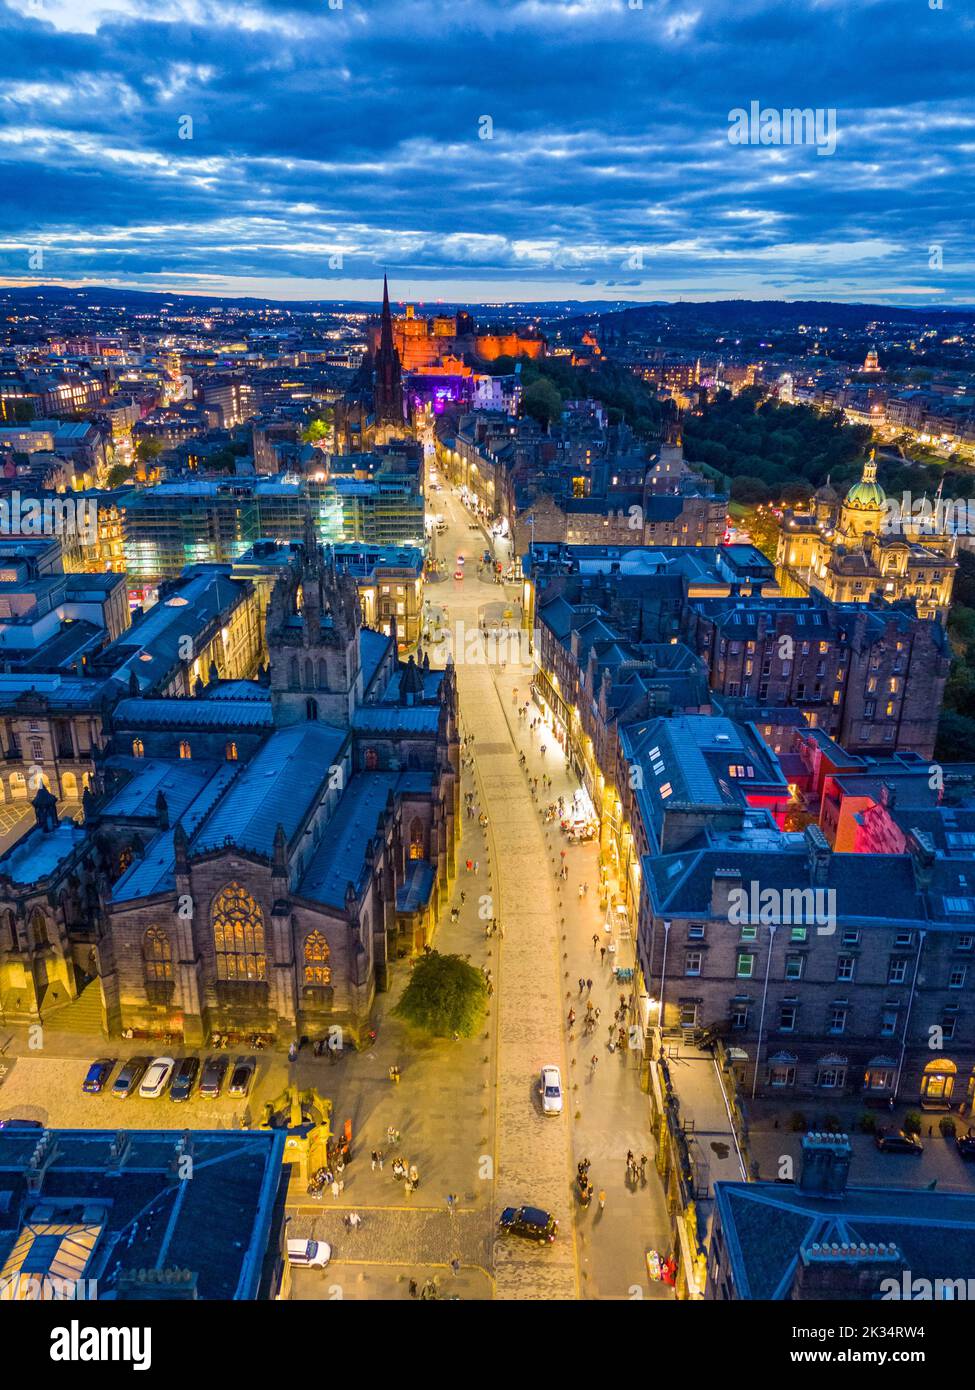 Vue aérienne de Royal Mile et de la cathédrale St Giles la nuit dans la vieille ville d'Édimbourg, en Écosse, au Royaume-Uni Banque D'Images